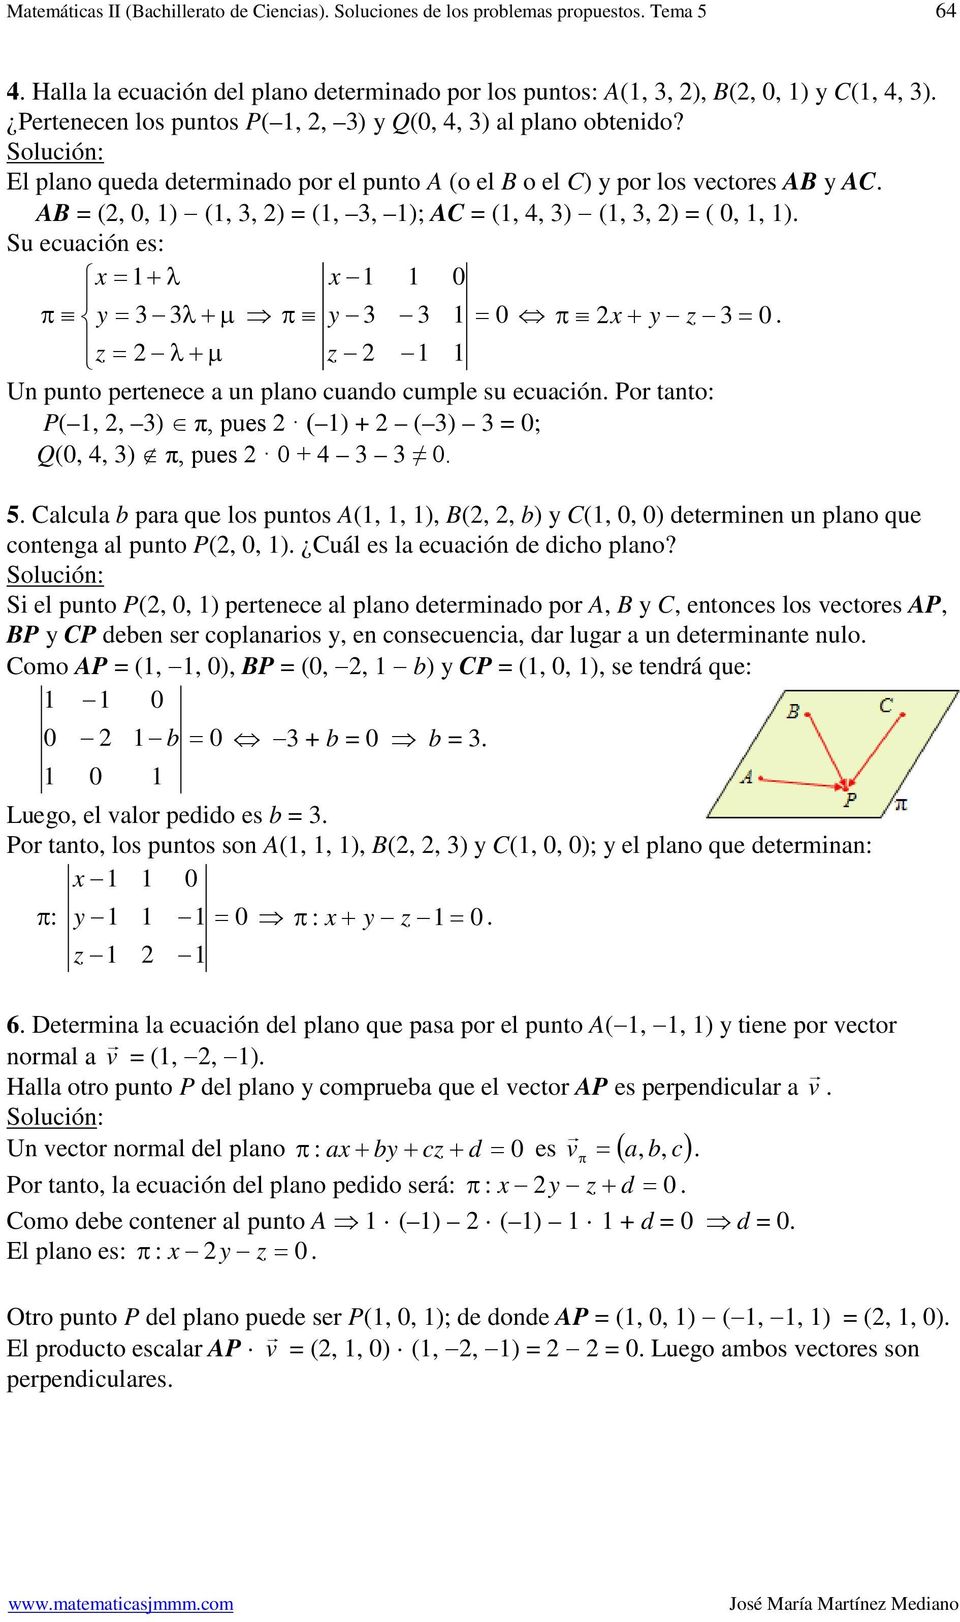 l plano queda deeminado po el puno A (o el B o el C) po los vecoes AB AC AB (,, ) (,, ) (,, ); AC (,, ) (,, ) (,, ) Su ecuación es λ λ µ λ µ Un puno peenece a un plano cuando cumple su ecuación Po